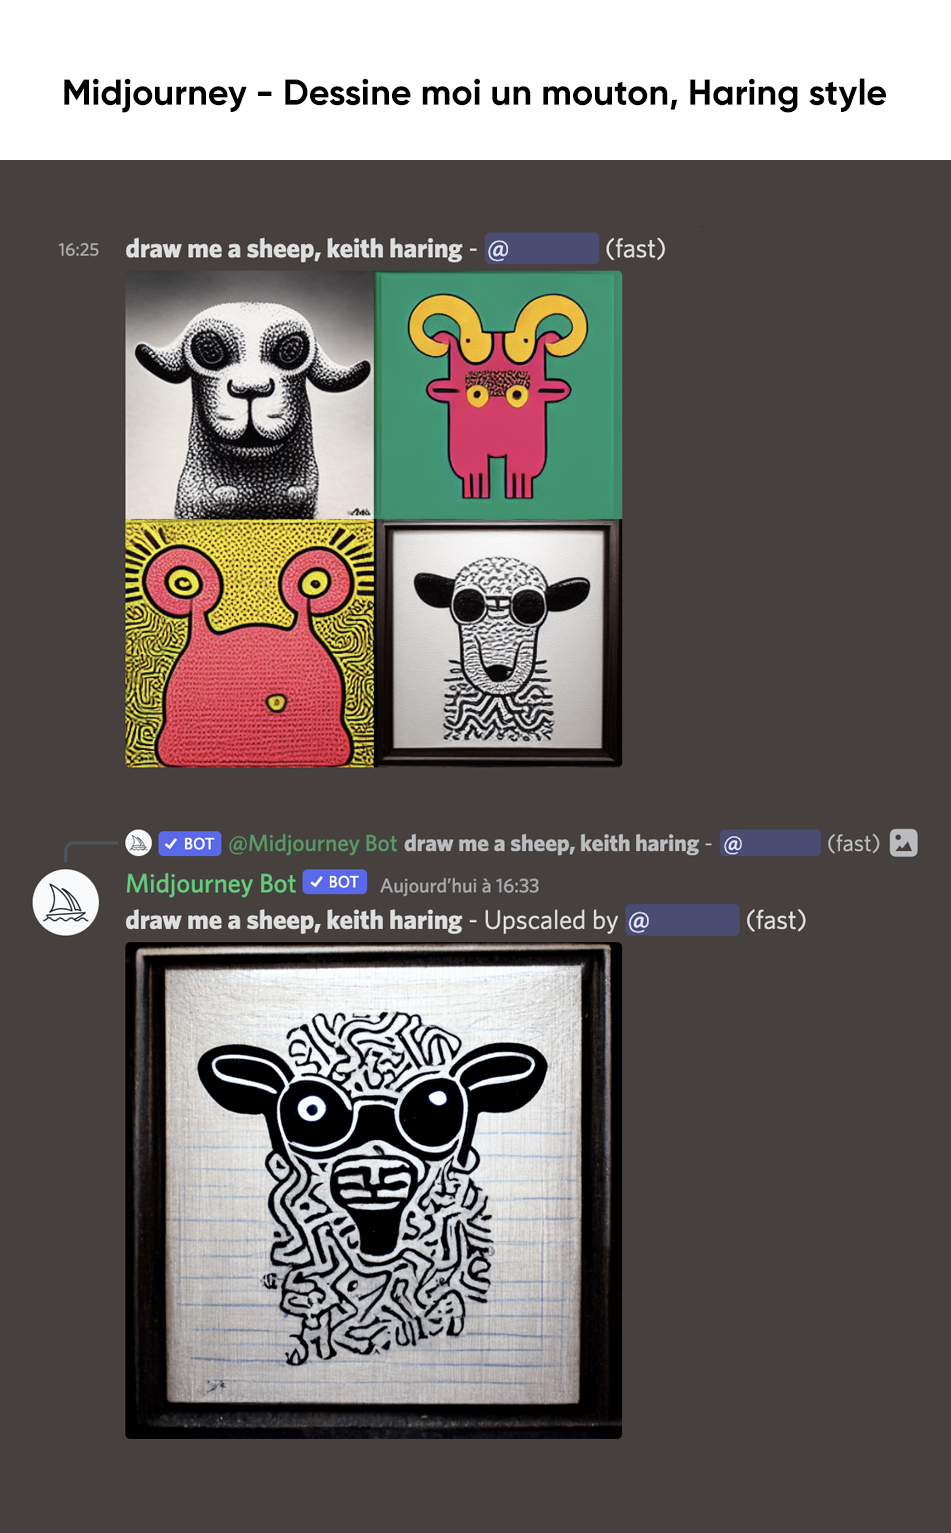 visuels de moutons générés par une AI dans le style de Keith Haring